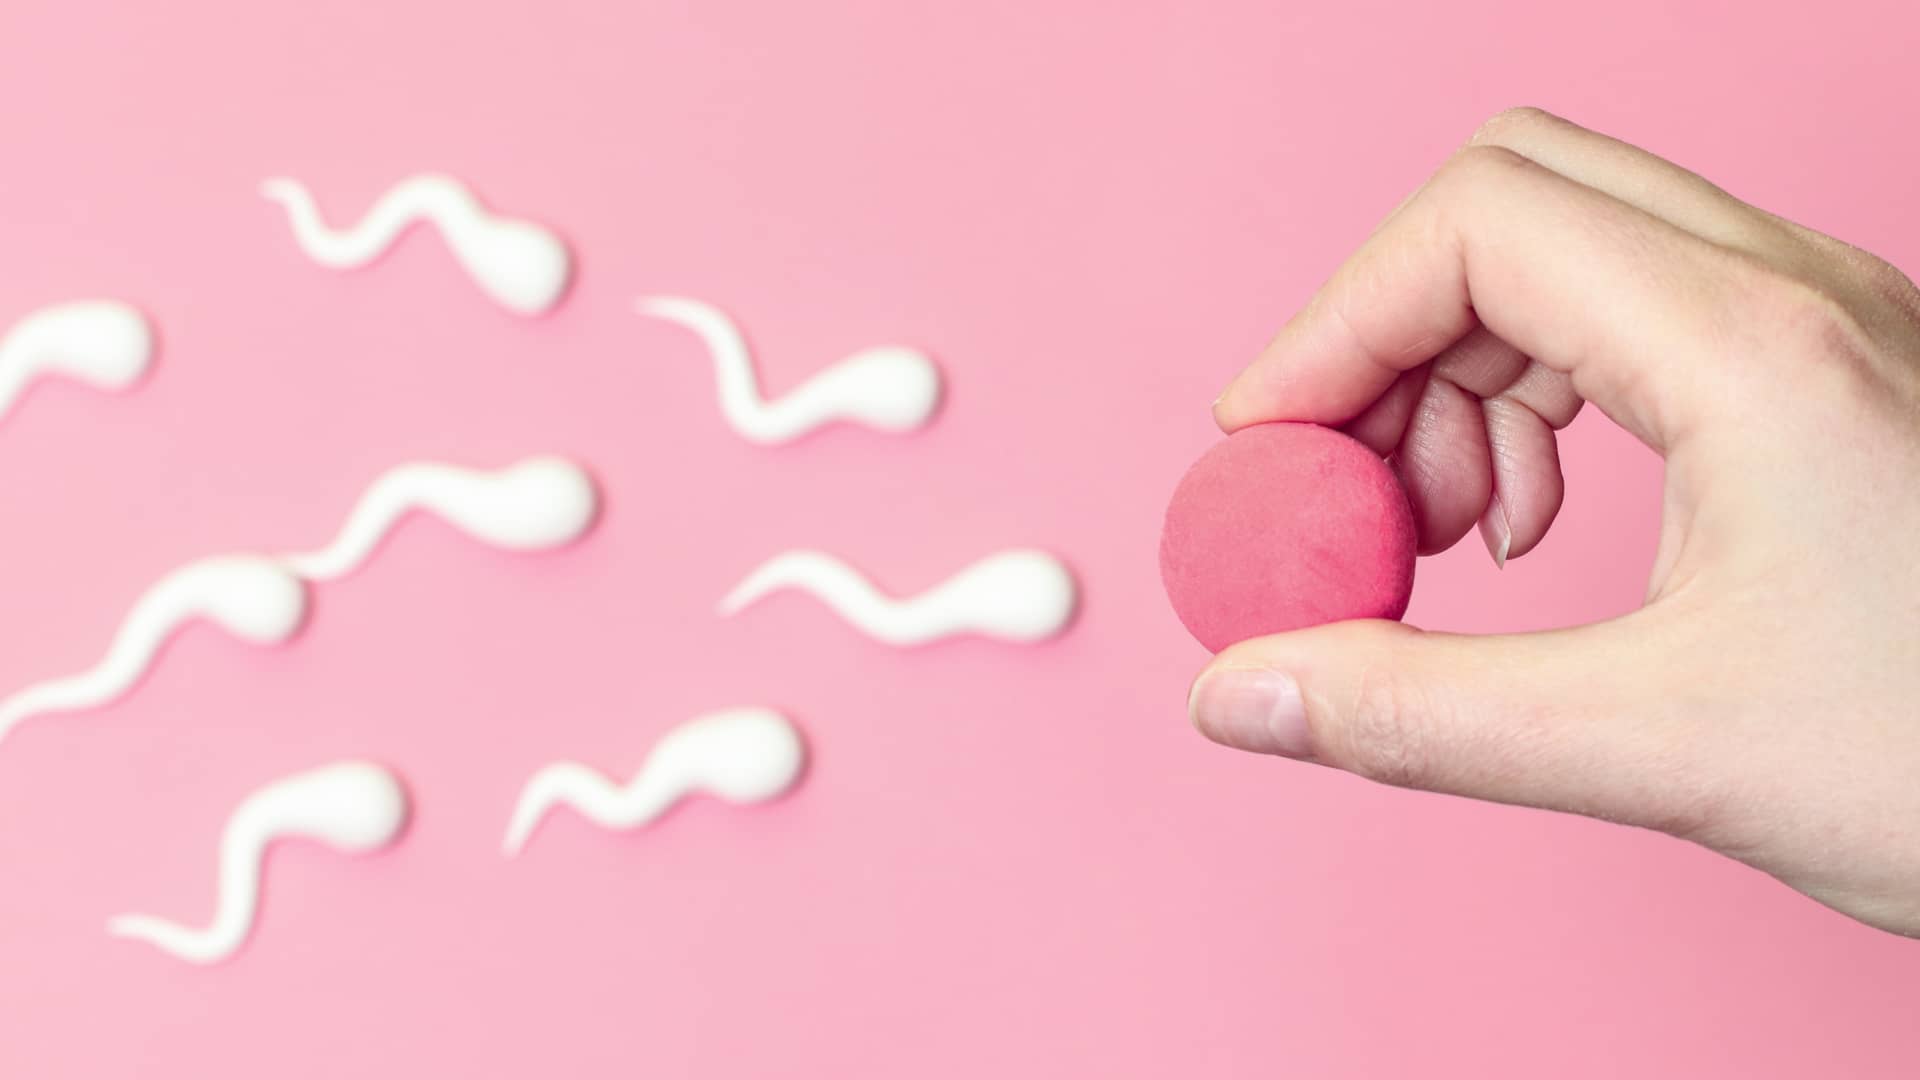 Concepto de la tasa de exito en la inseminación artificial explicado con espermatozoides corriendo hacia un ovulo que esta sinedo sujetado por una mano